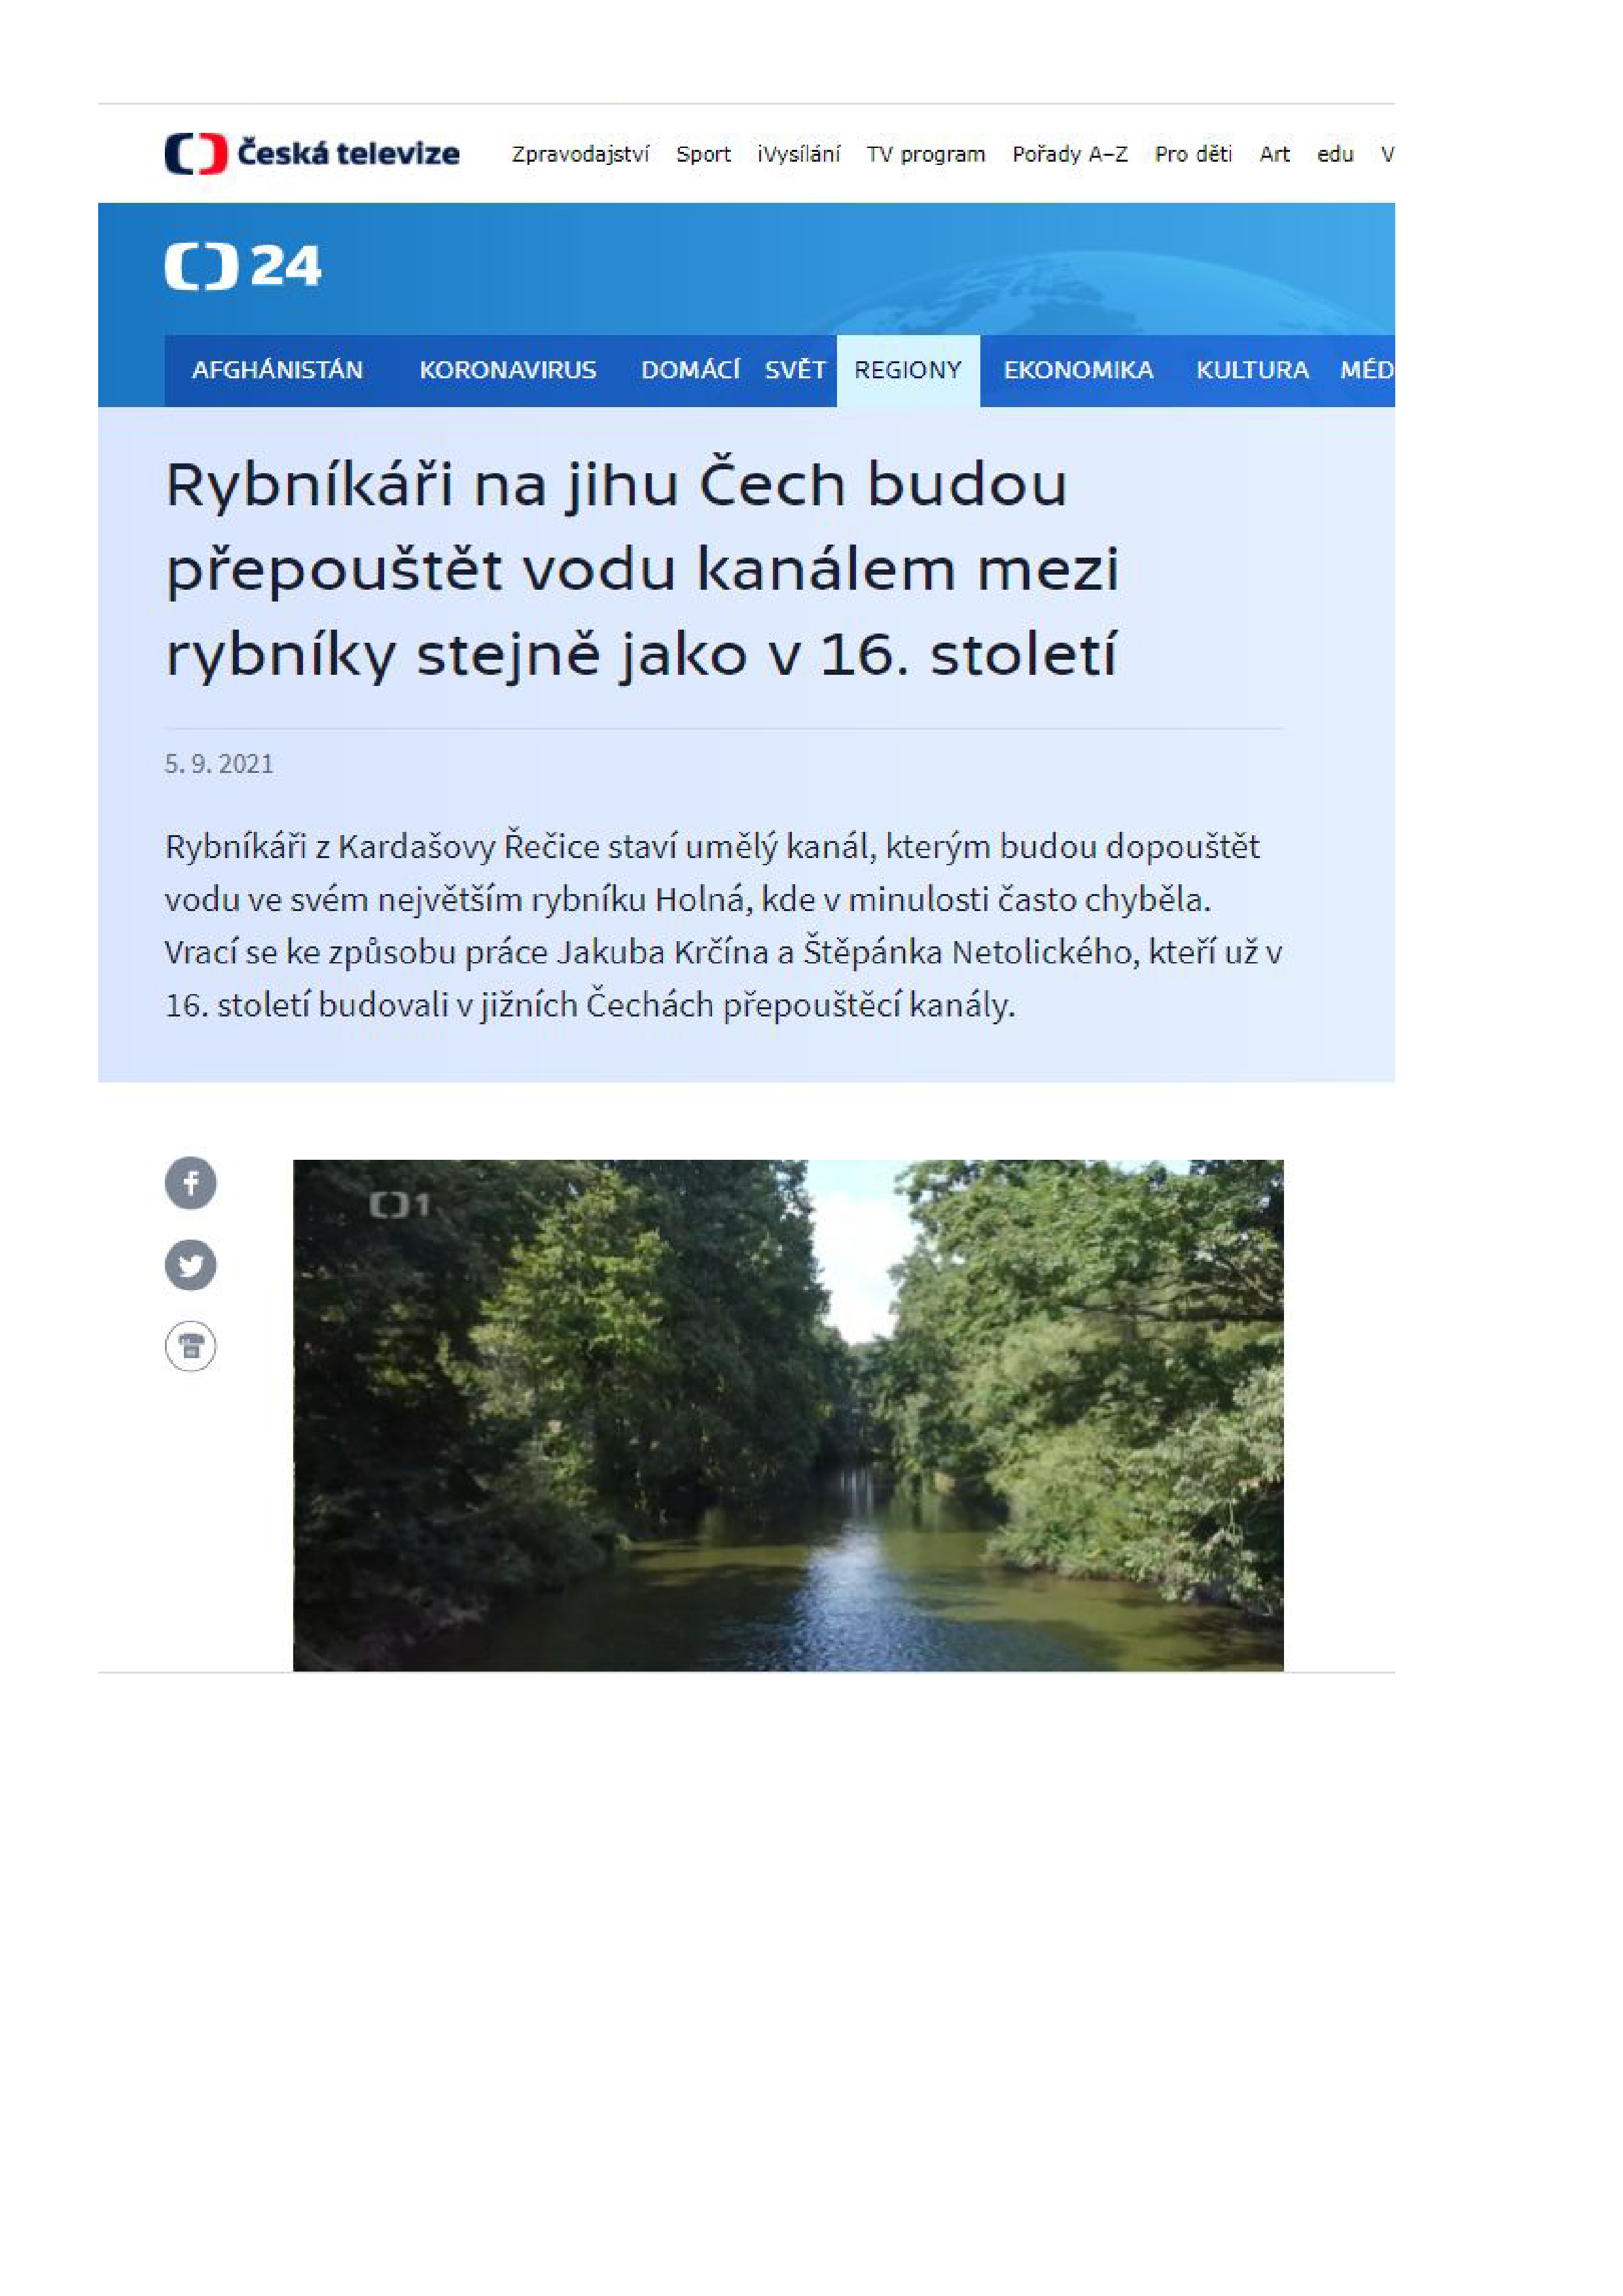 Rybníkáři na jihu Čech budou přepouštět vodu kanálem mezi rybníky stejně jako v 16. století